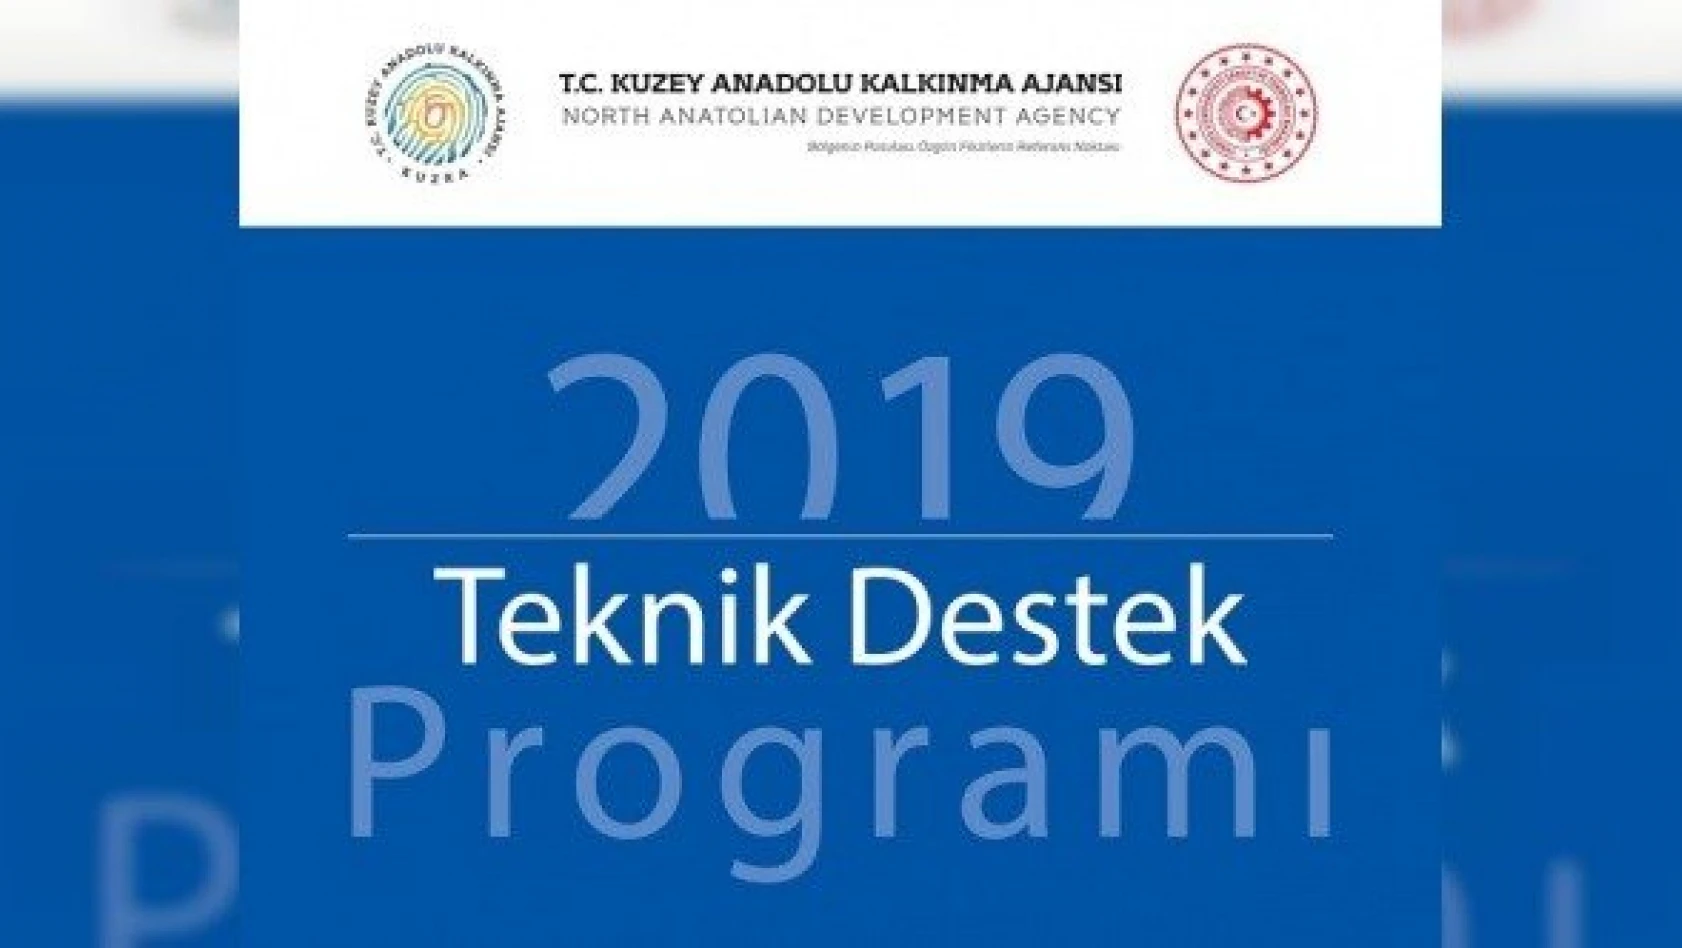 KUZKA, 2019 Yılı Teknik Destek Programı kapsamında proje kabulüne başladı